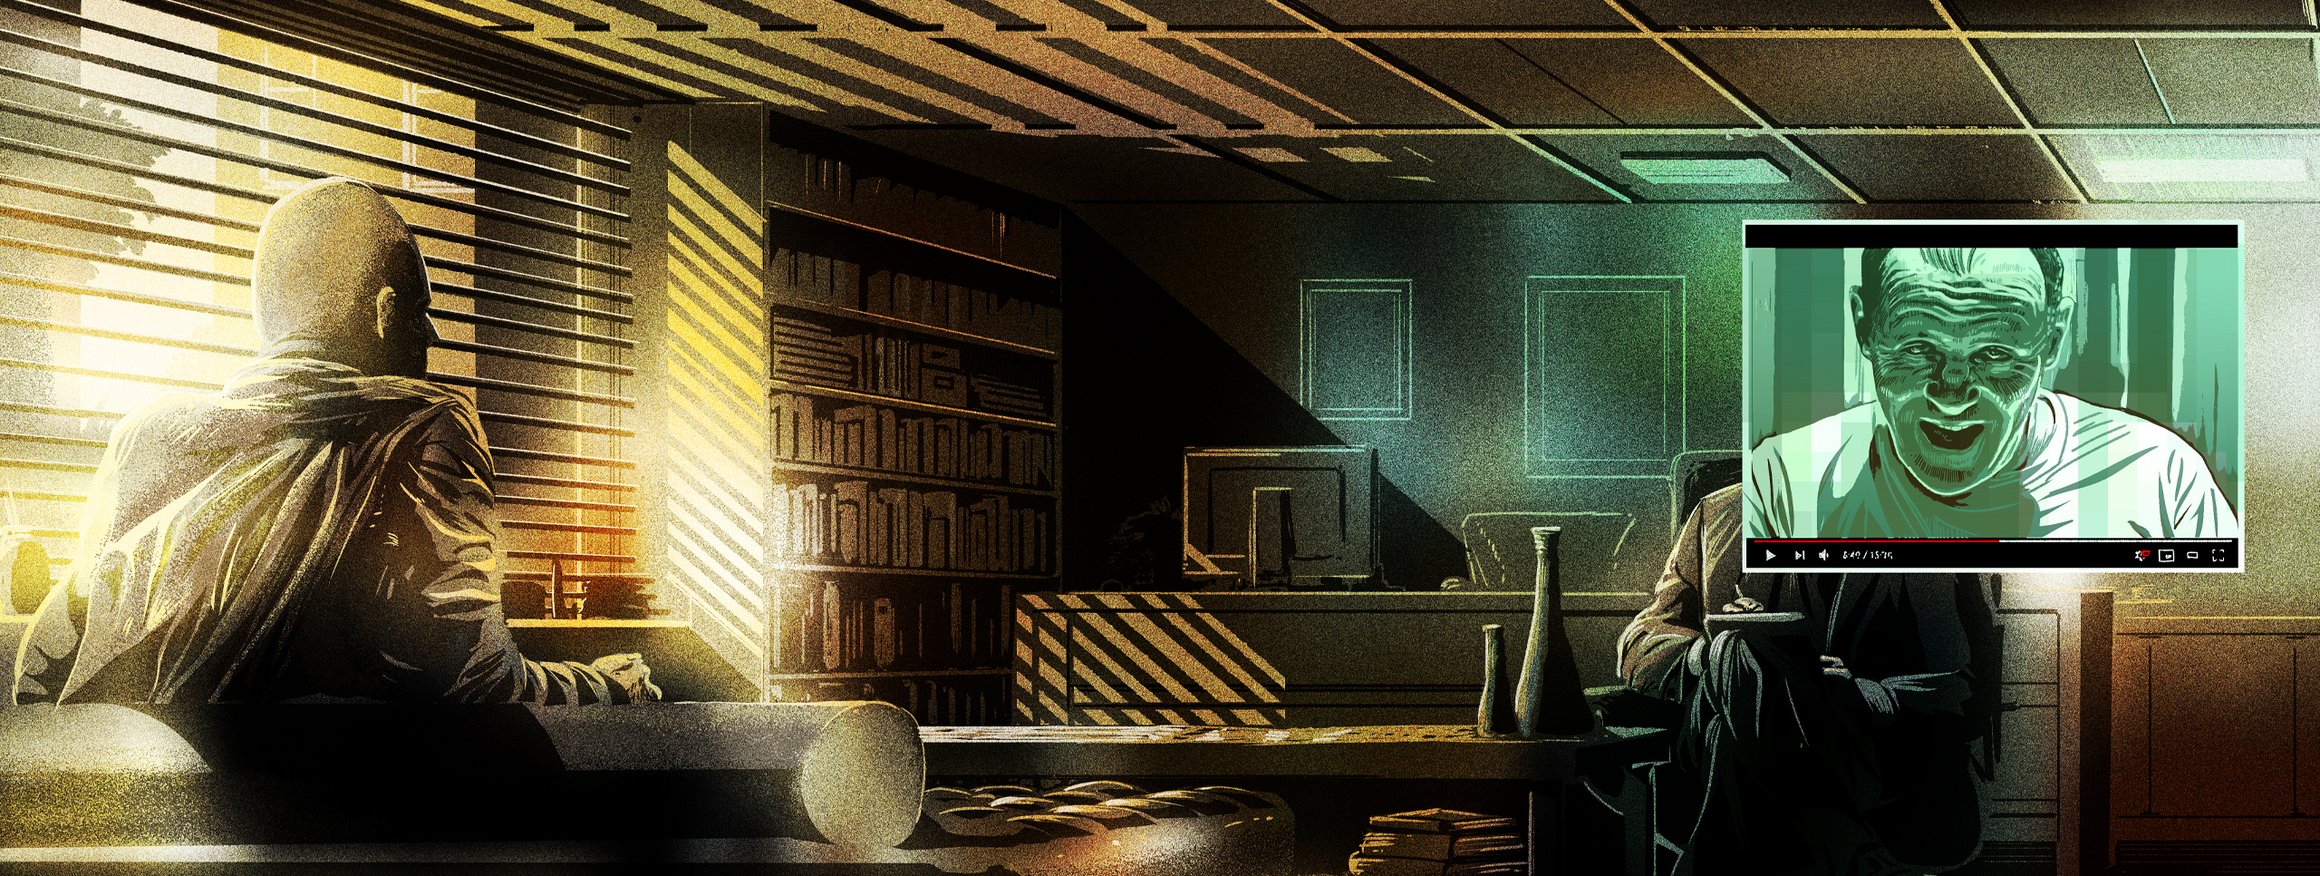 Die Illustration zeigt einen Klienten bei seinem Therapeuten in einem dunklen Raum, wobei der Therapeut aussieht wie Hannibal Lecter aus dem Kinofilm